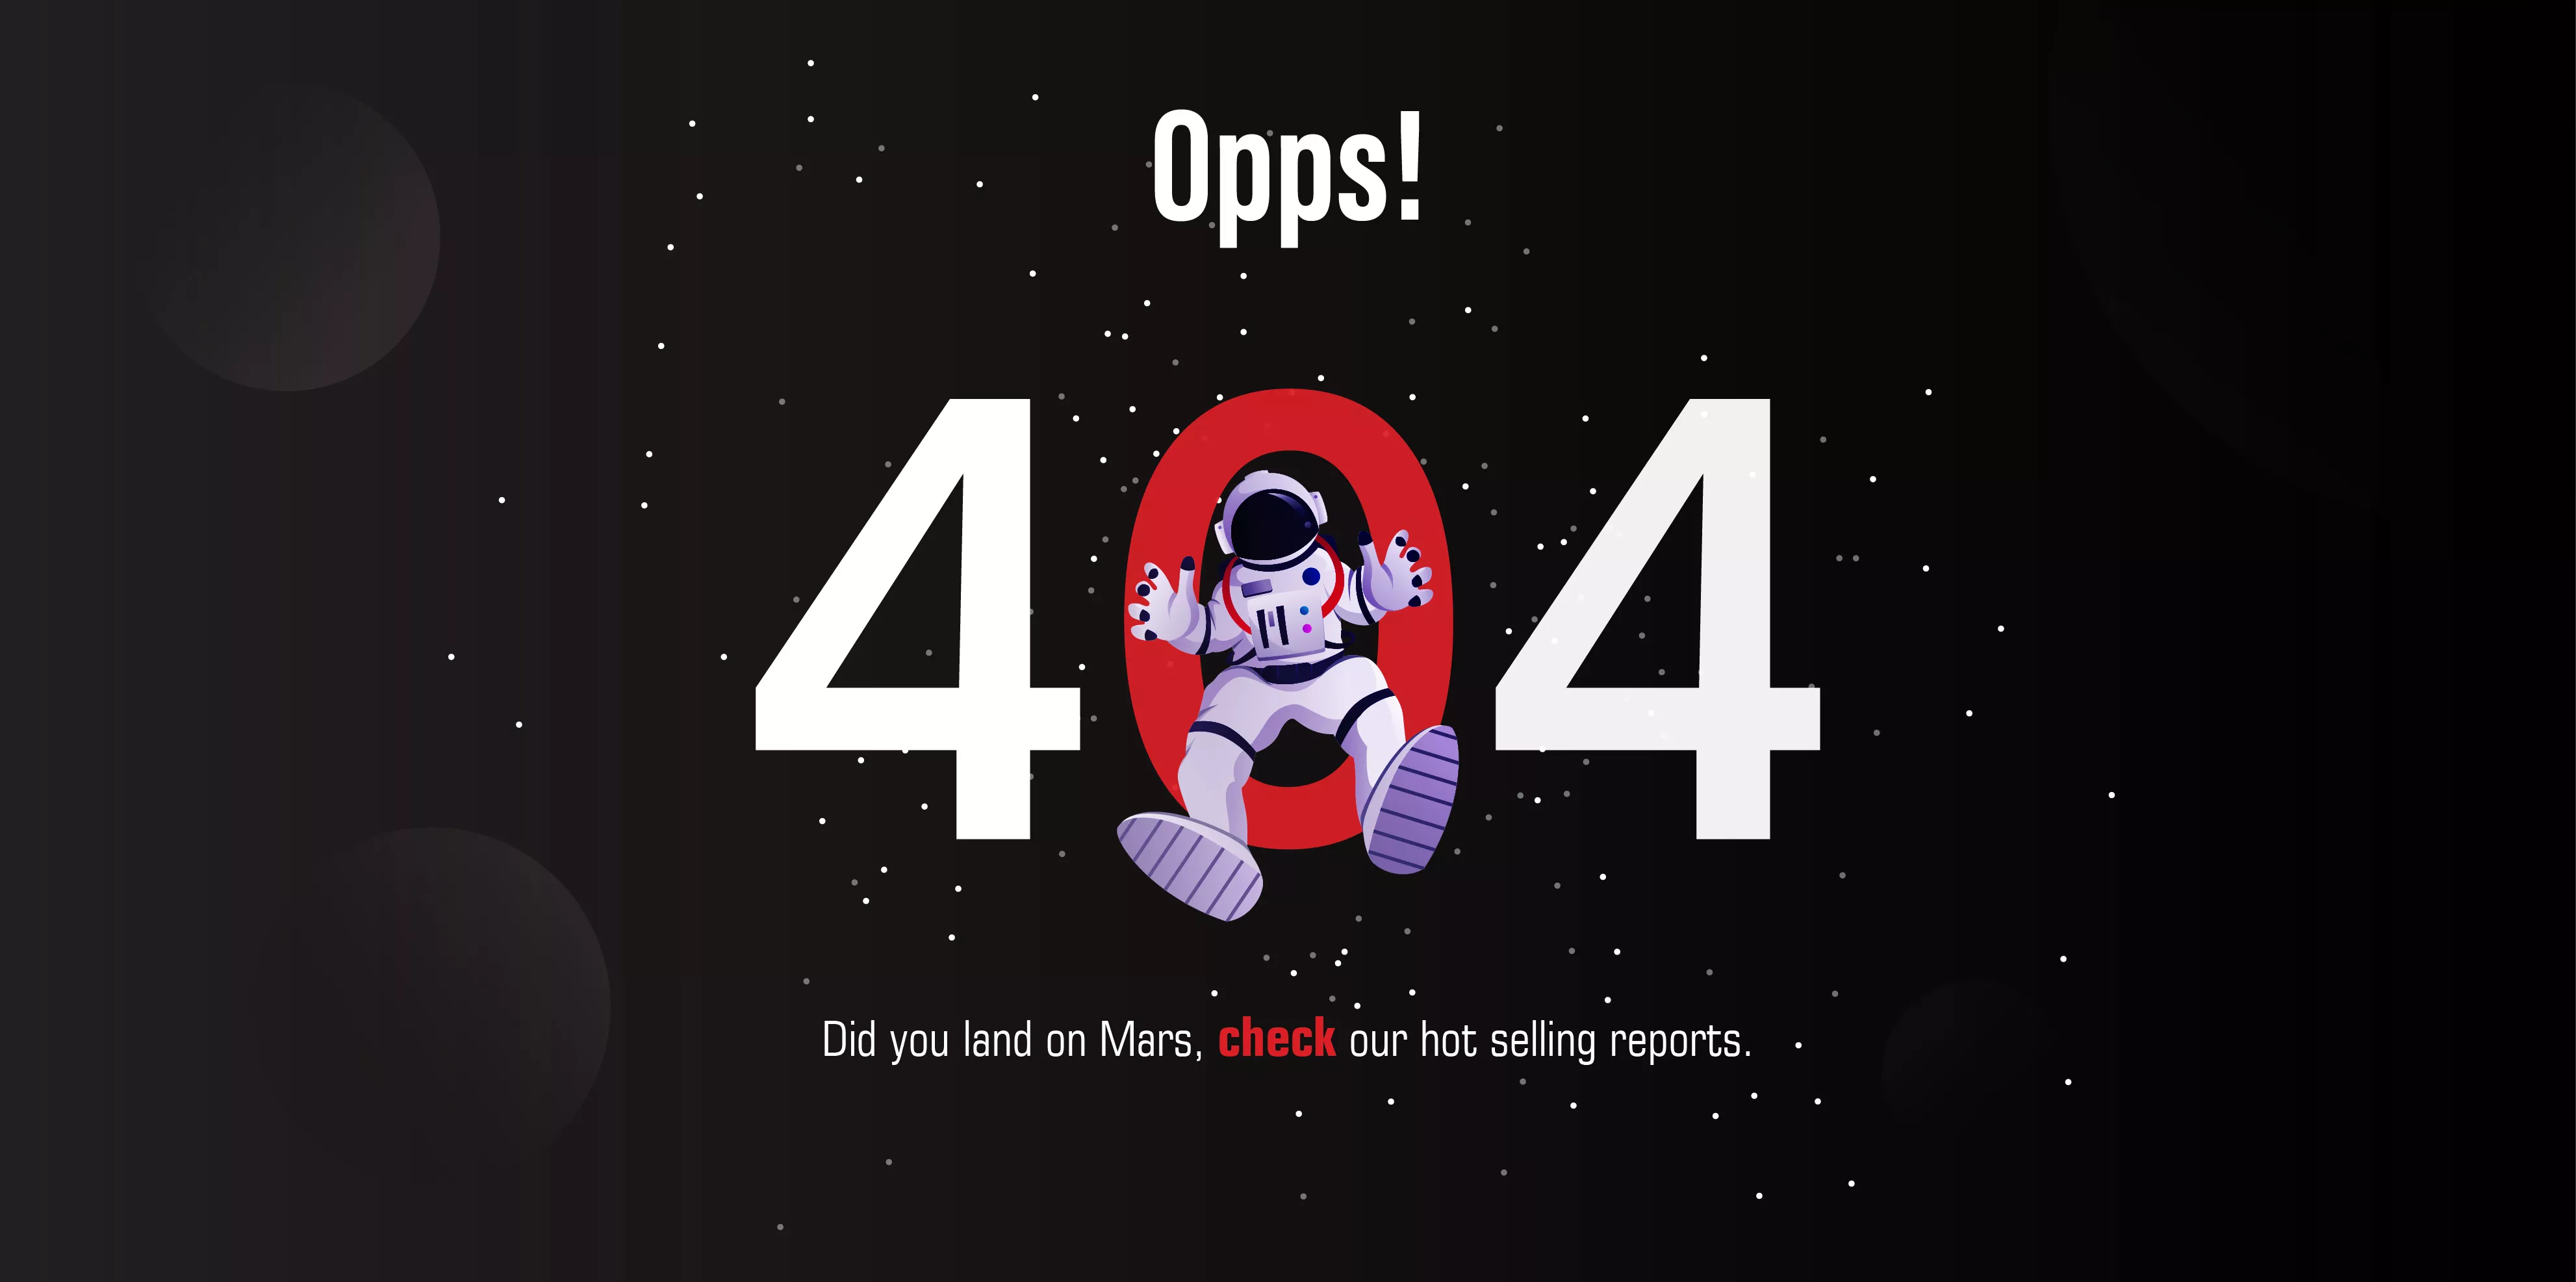 404-Error